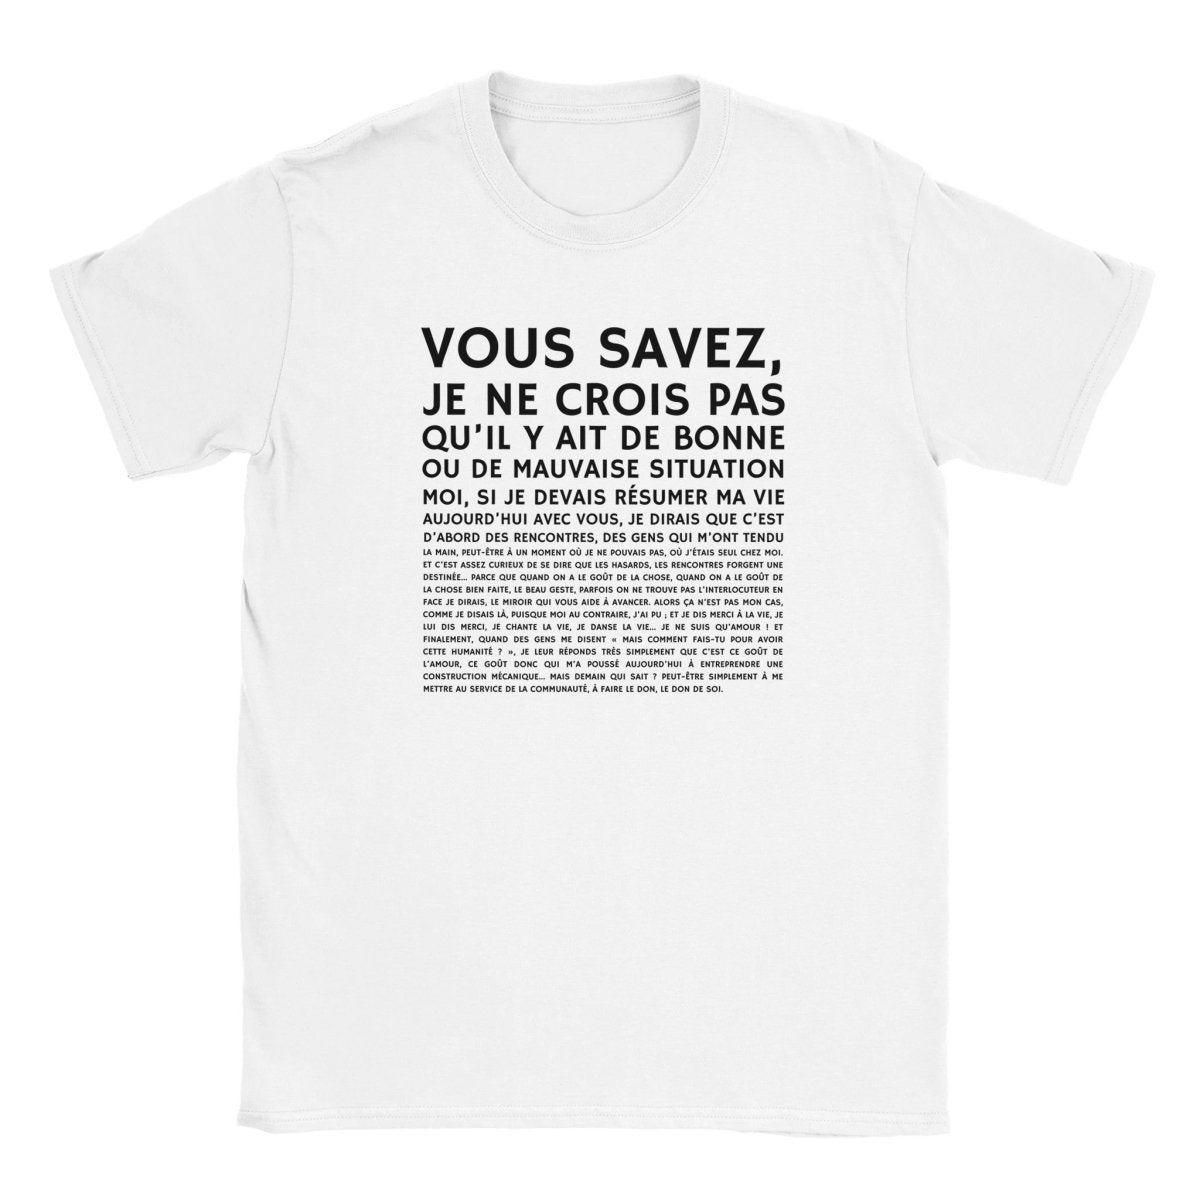 T-shirt unisexe "Vous savez..." - Mister Shirt - Print Material